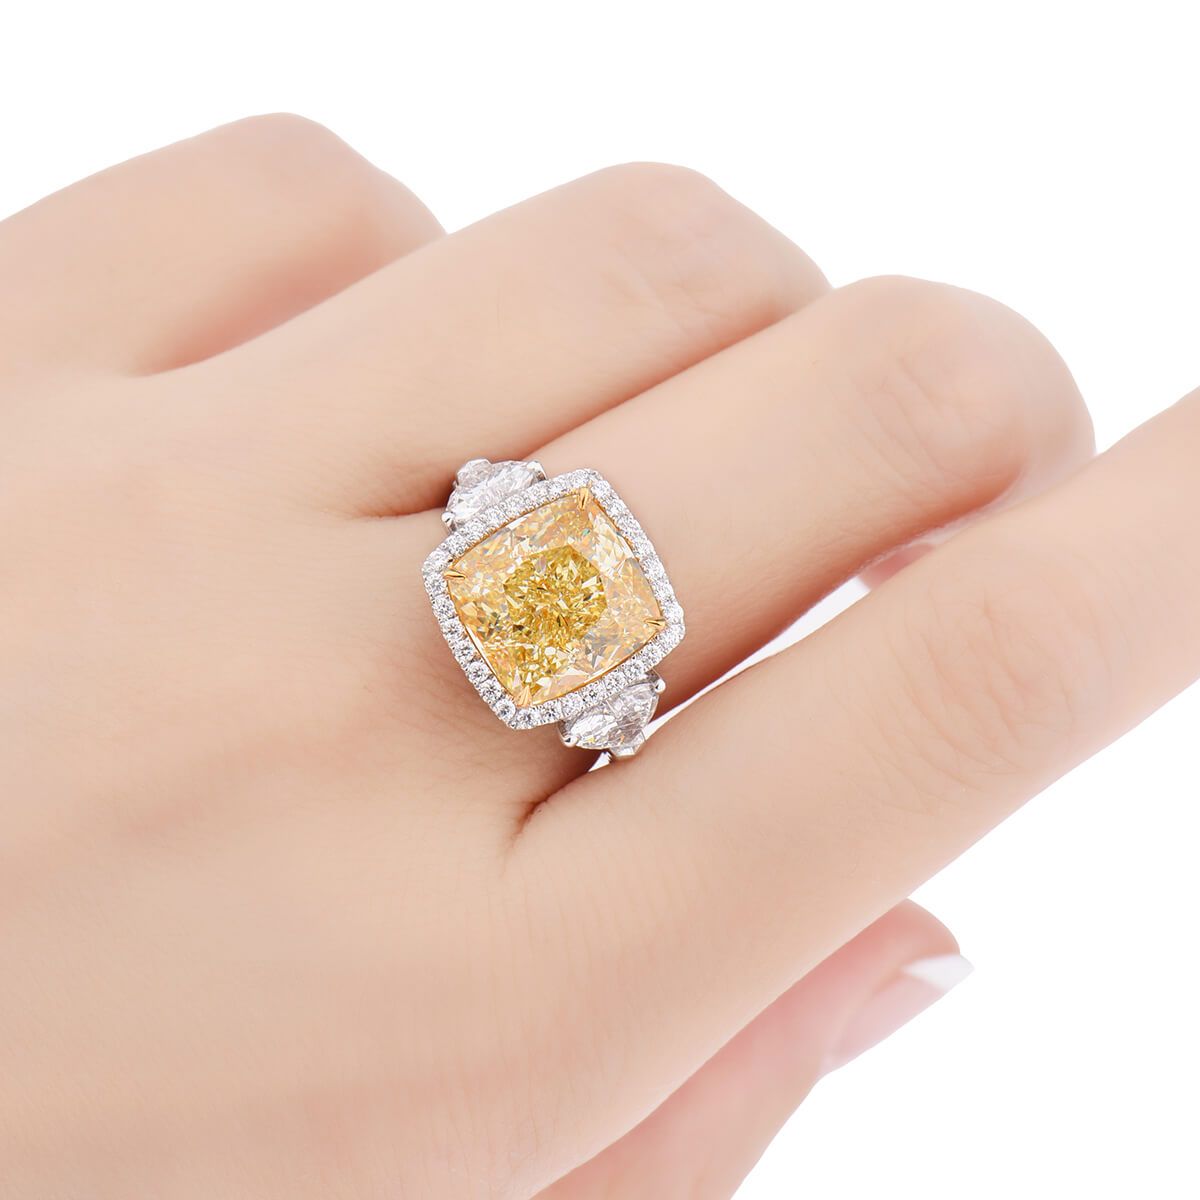 Fancy Light Yellow Diamond Ring, 8.79 Ct. TW, Cushion shape, GIA Certified, JCRF05404596